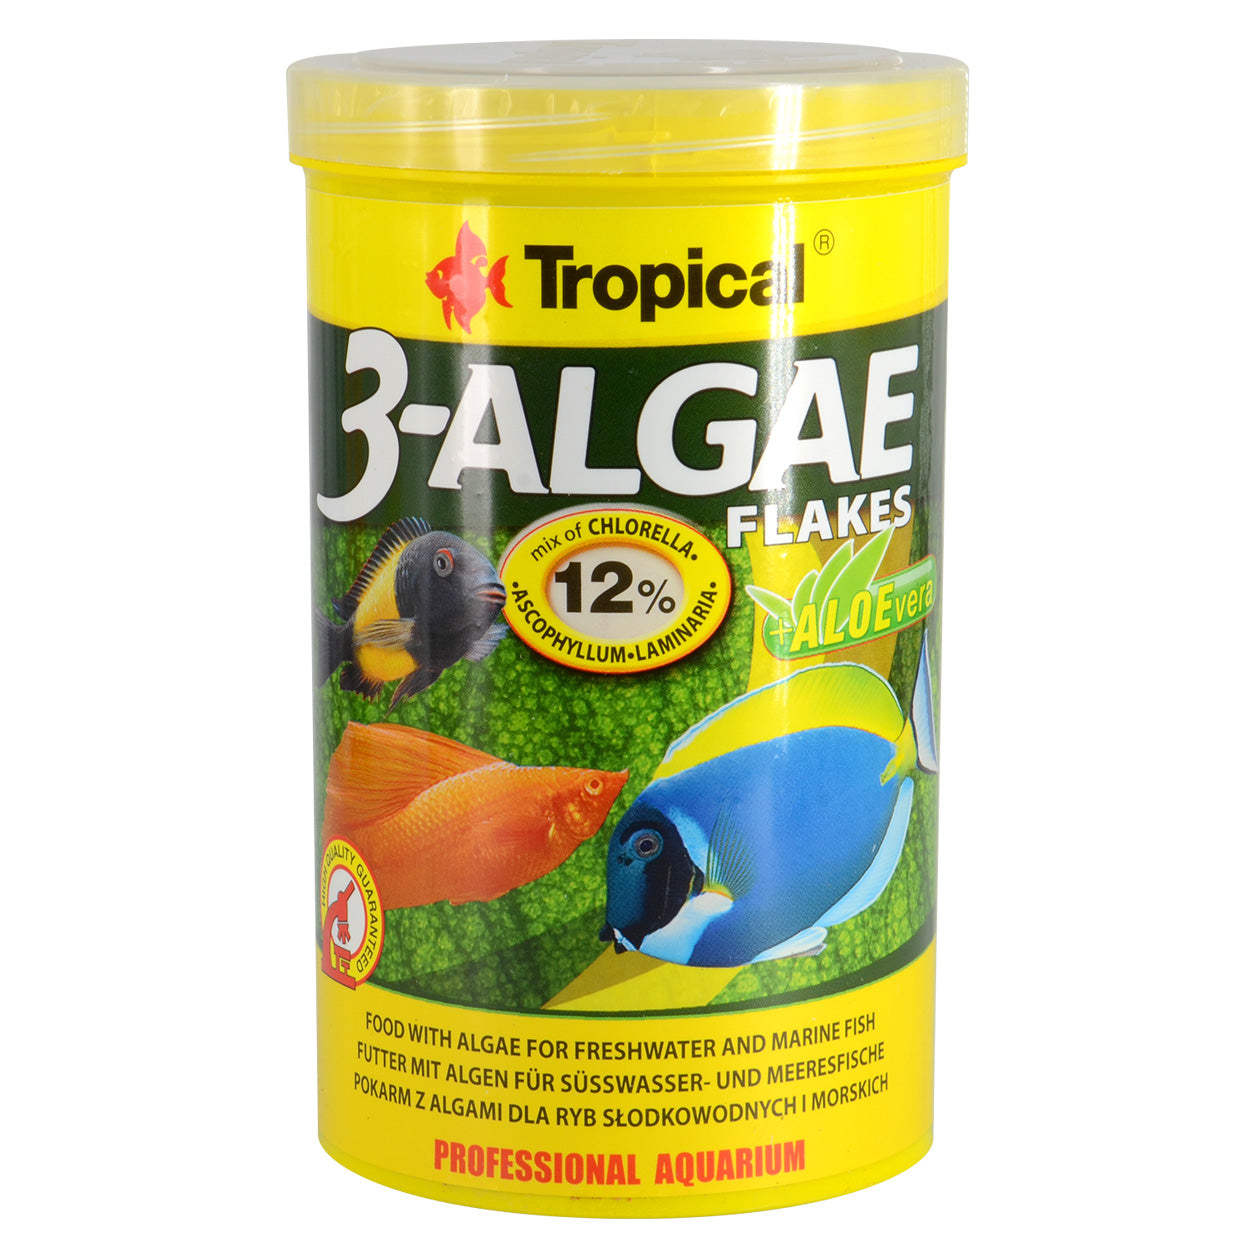 3-Algae Flakes, Tropical